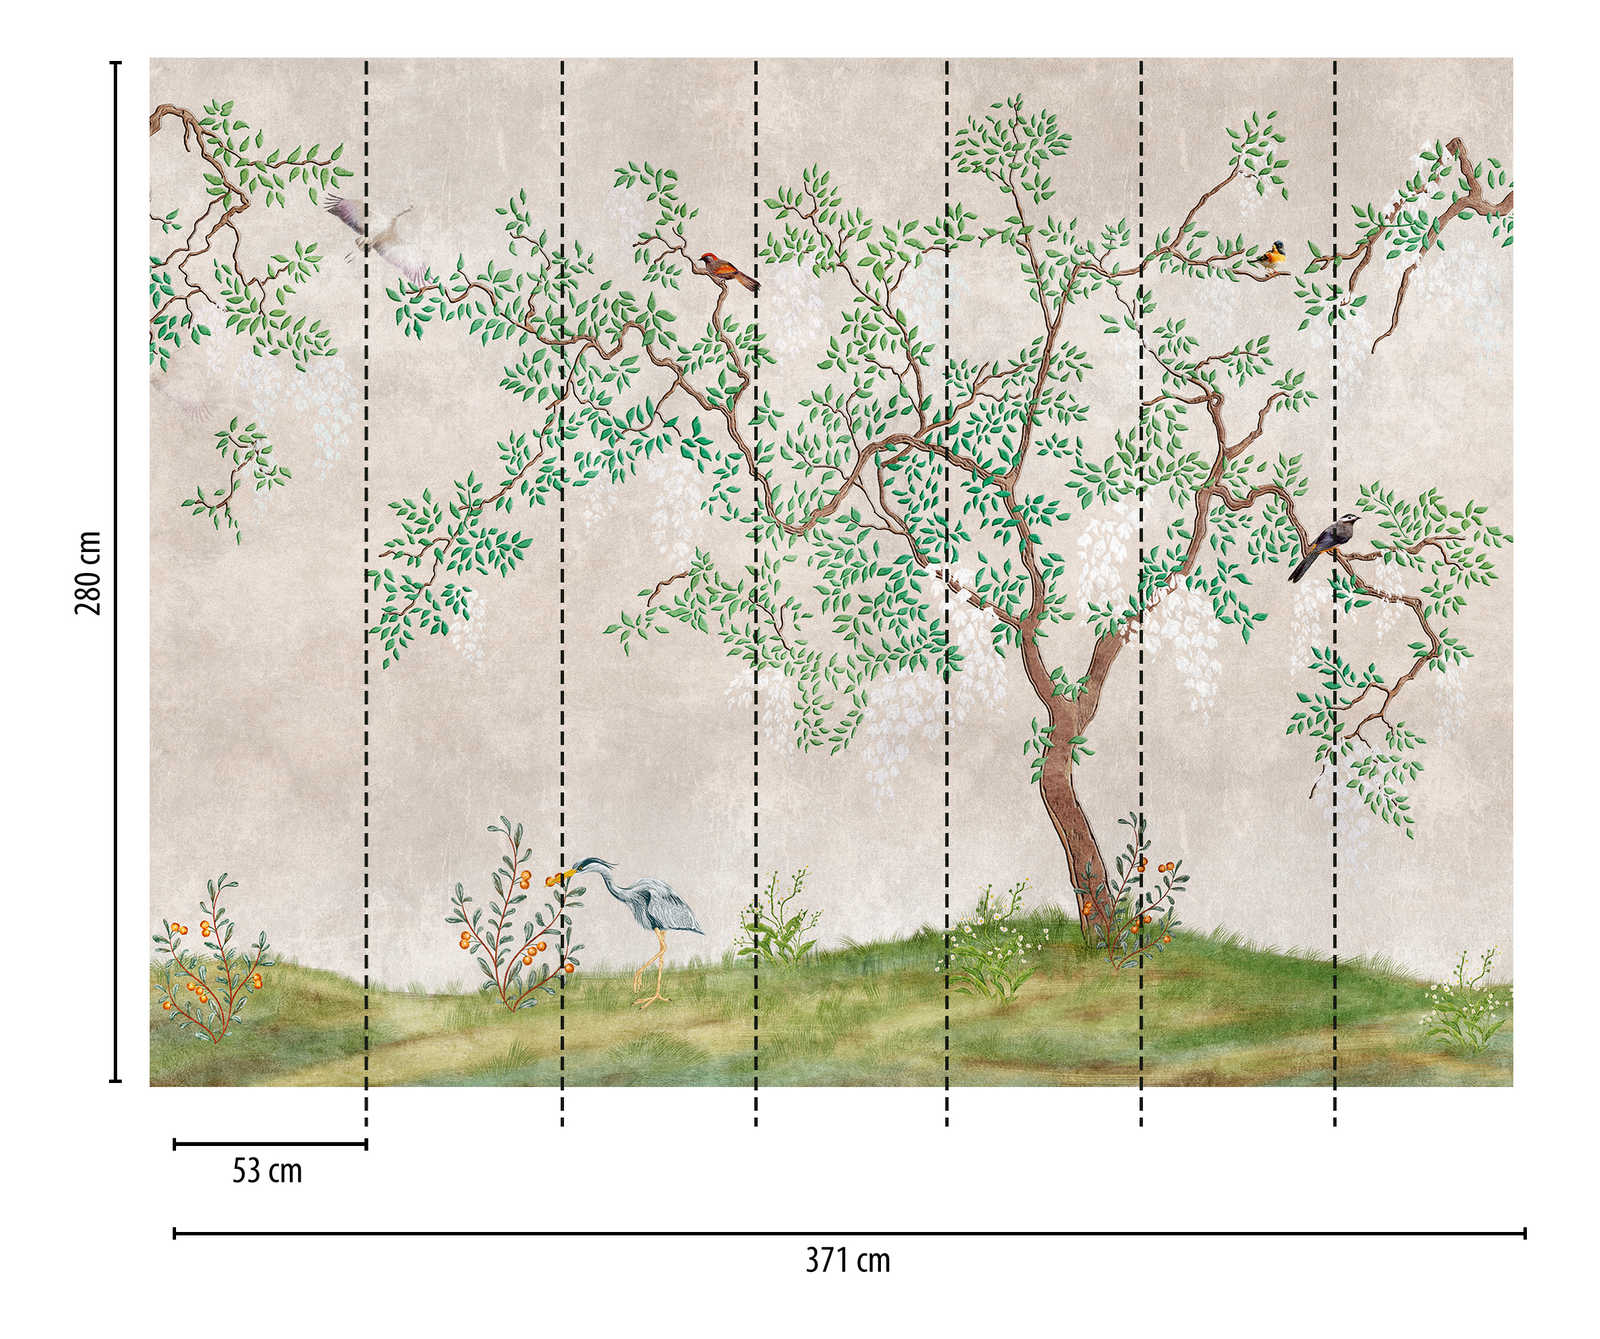             behang nieuwigheid | motief behang natuur ontwerp in Aziatische look
        